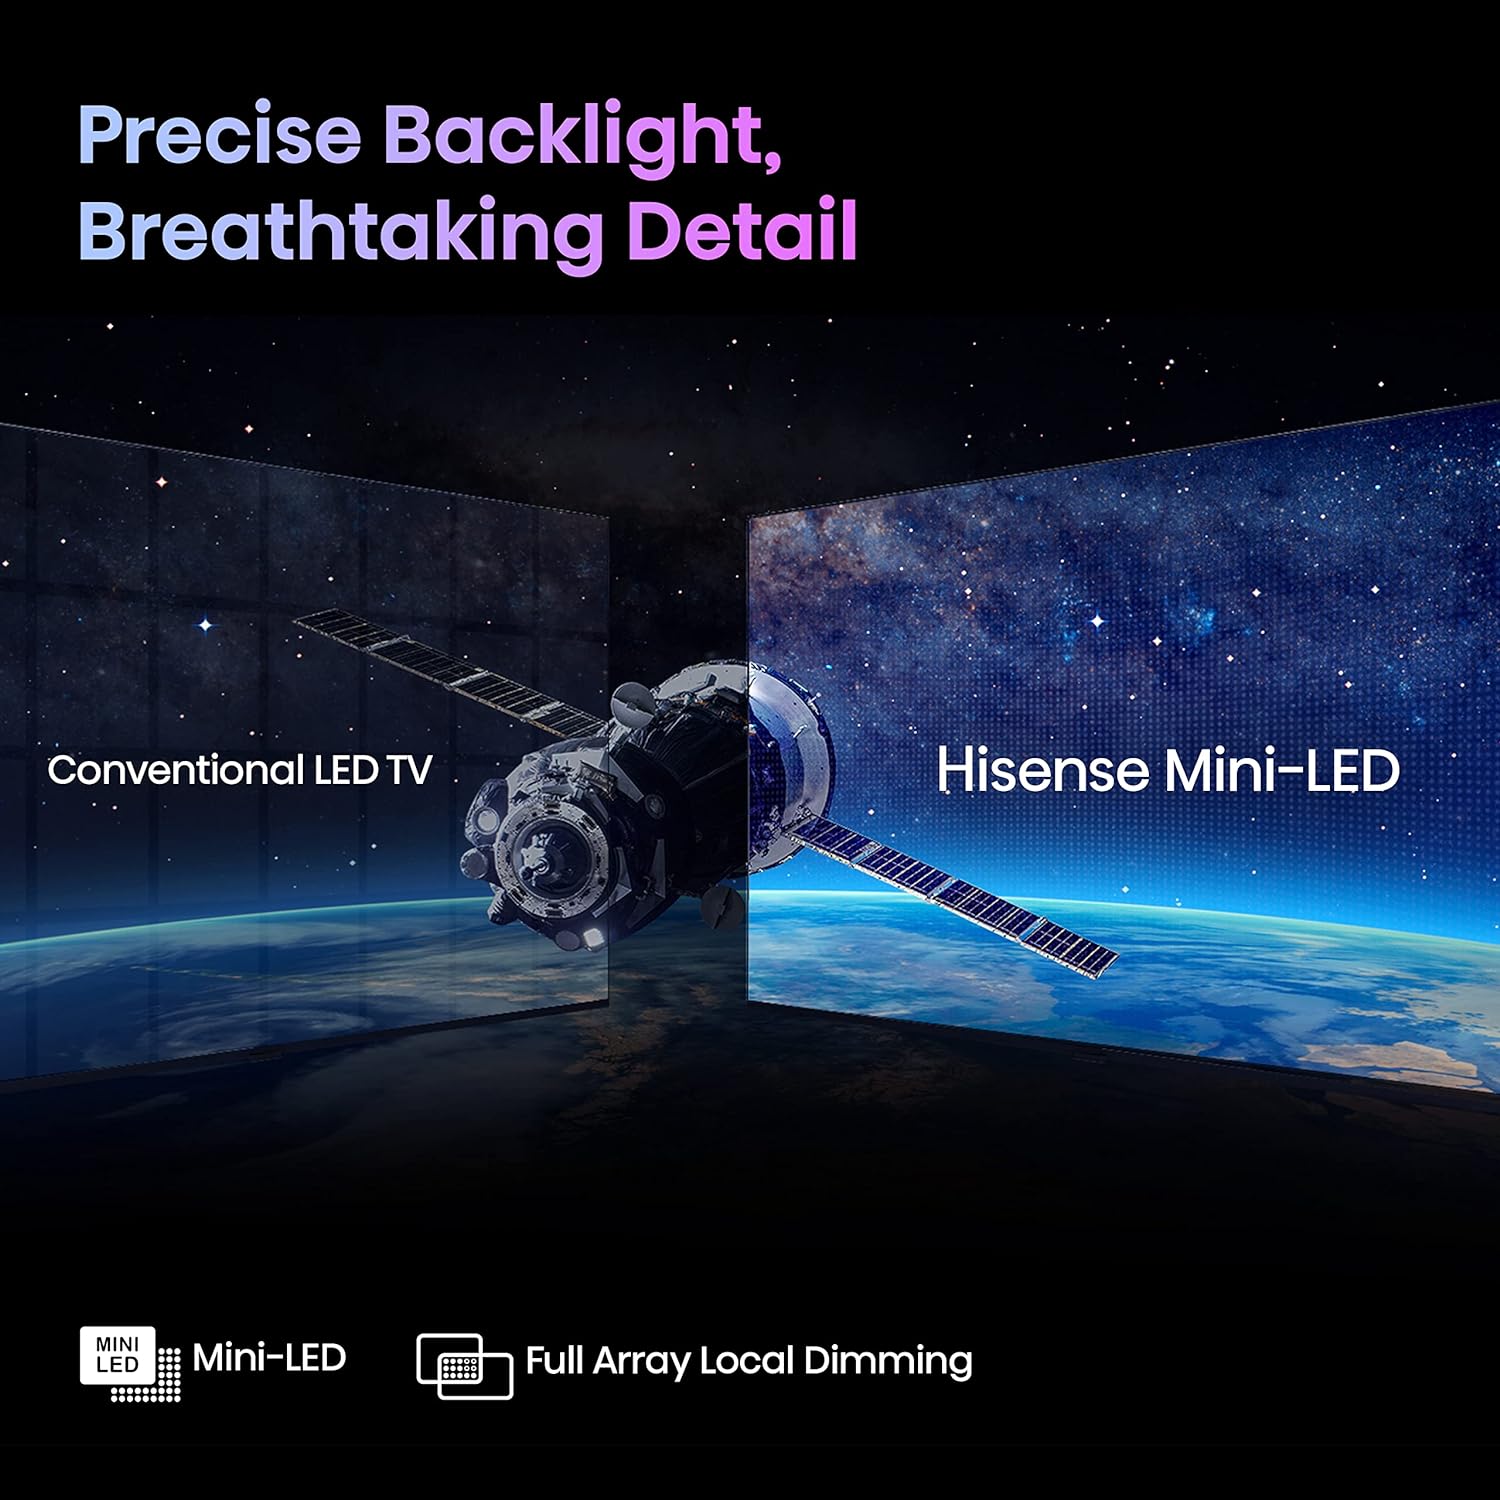 Hisense U7K 65" 4K ULED Mini-LED Android Smart TV